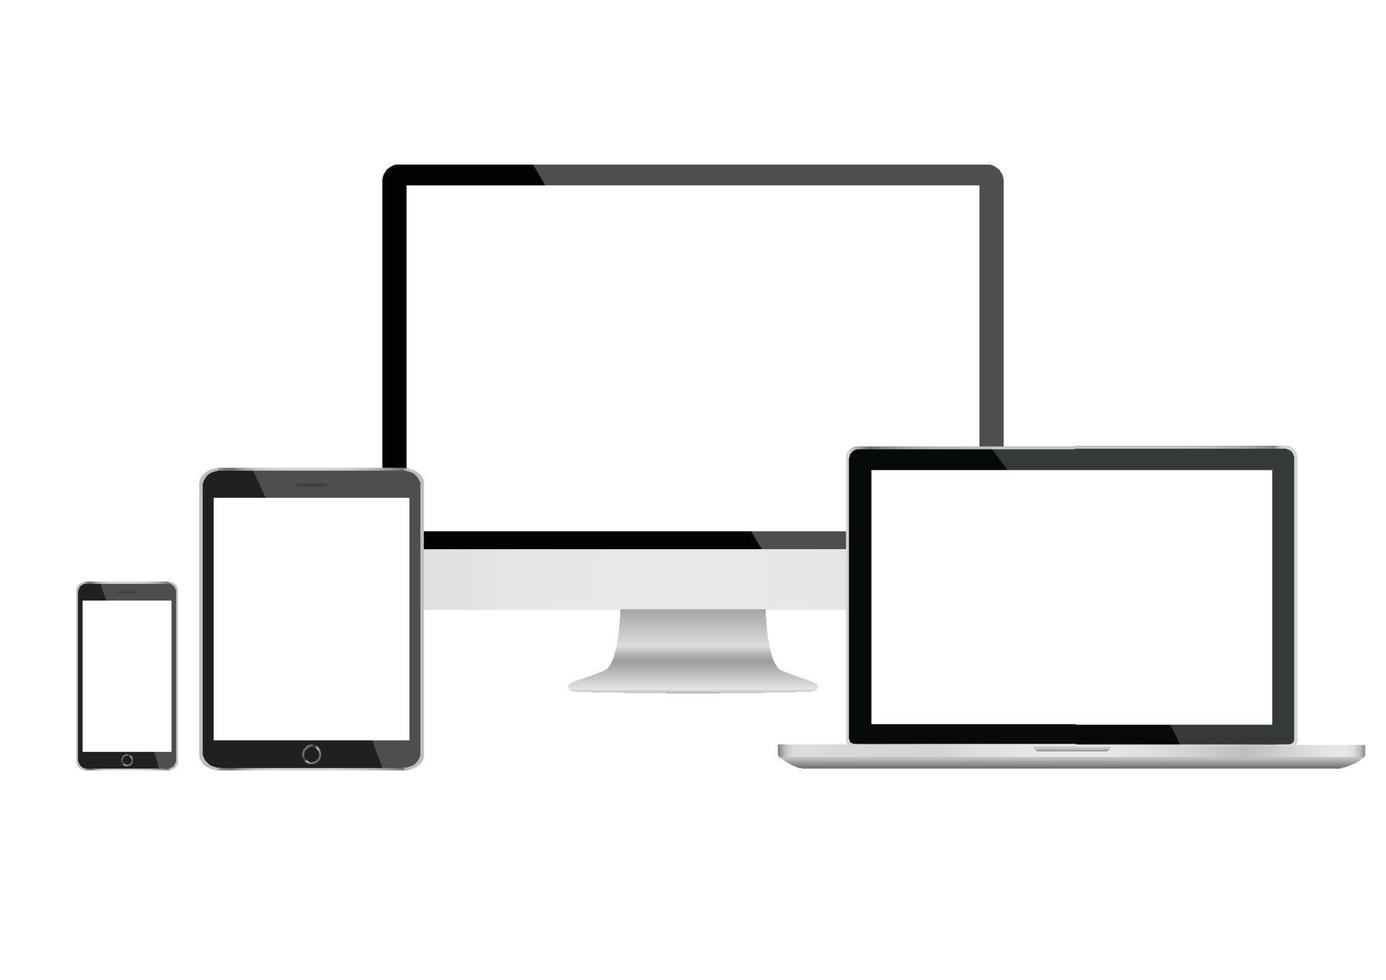 Mockup-Gadget und Geräte-Smartphones, Tablets, Laptops und Computermonitore schwarze Farbe mit leerem Bildschirm isoliert auf weißem Hintergrund. Stock-Vektor-Illustration vektor